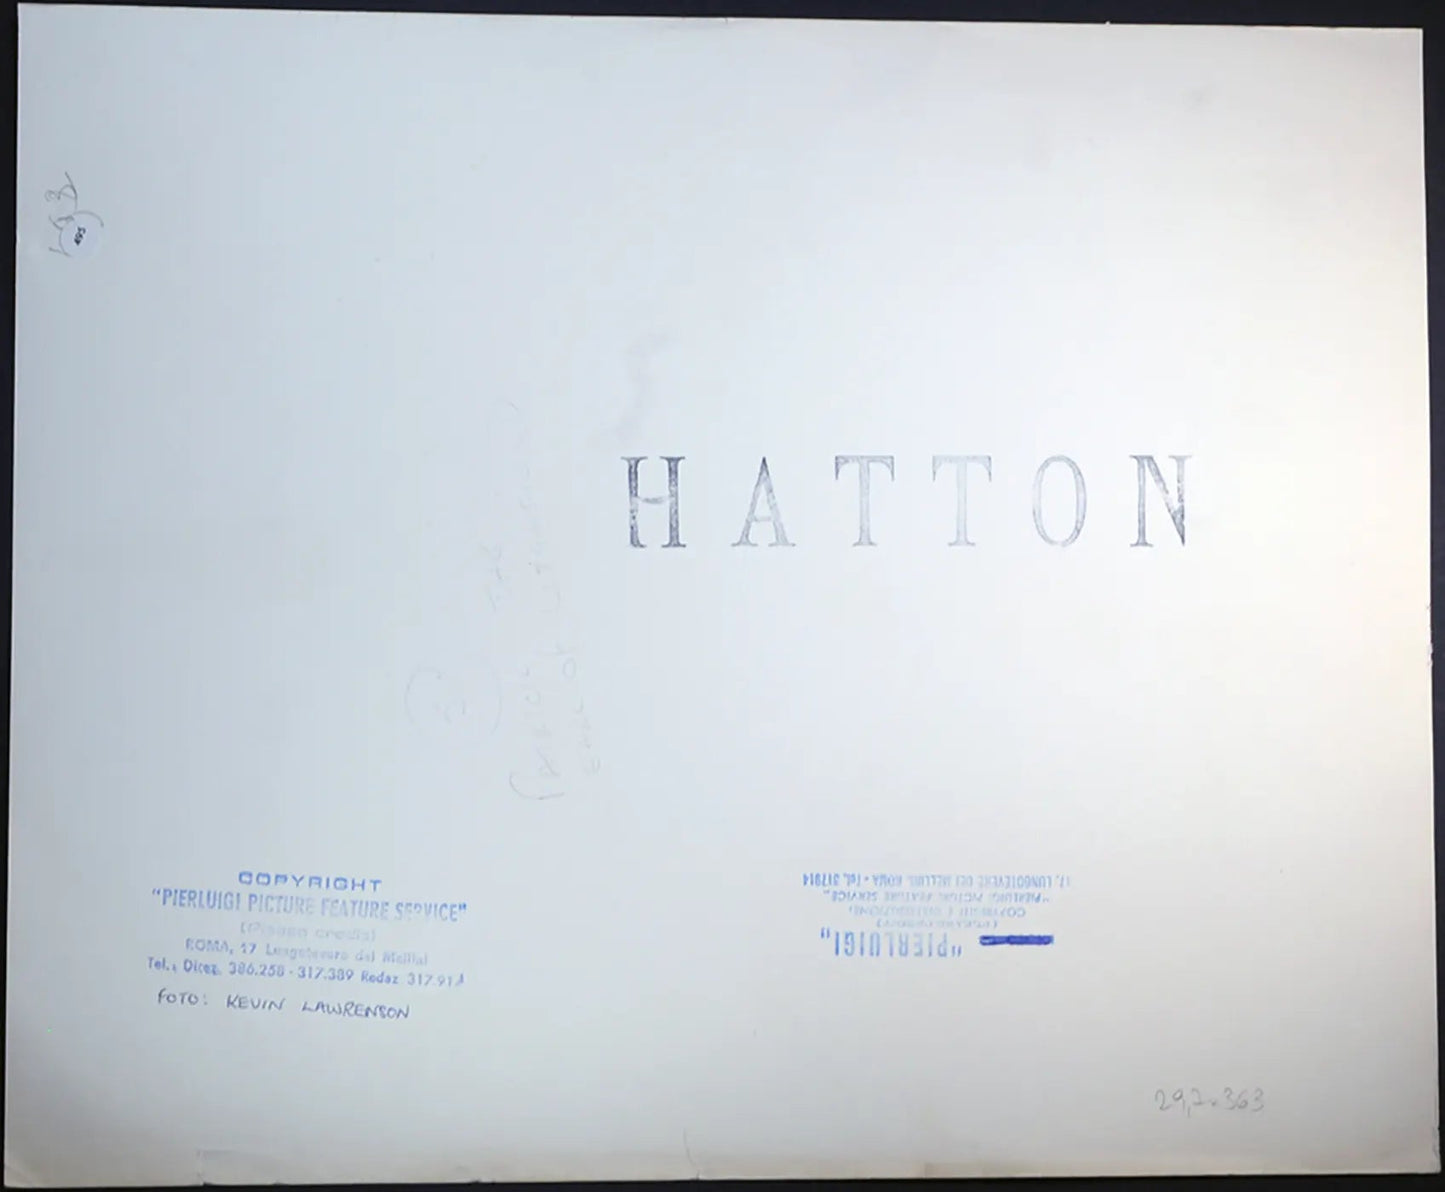 Patrick Anson conte di Lichfield Ft 495 - Stampa 30x37 cm - Farabola Stampa ai sali d'argento